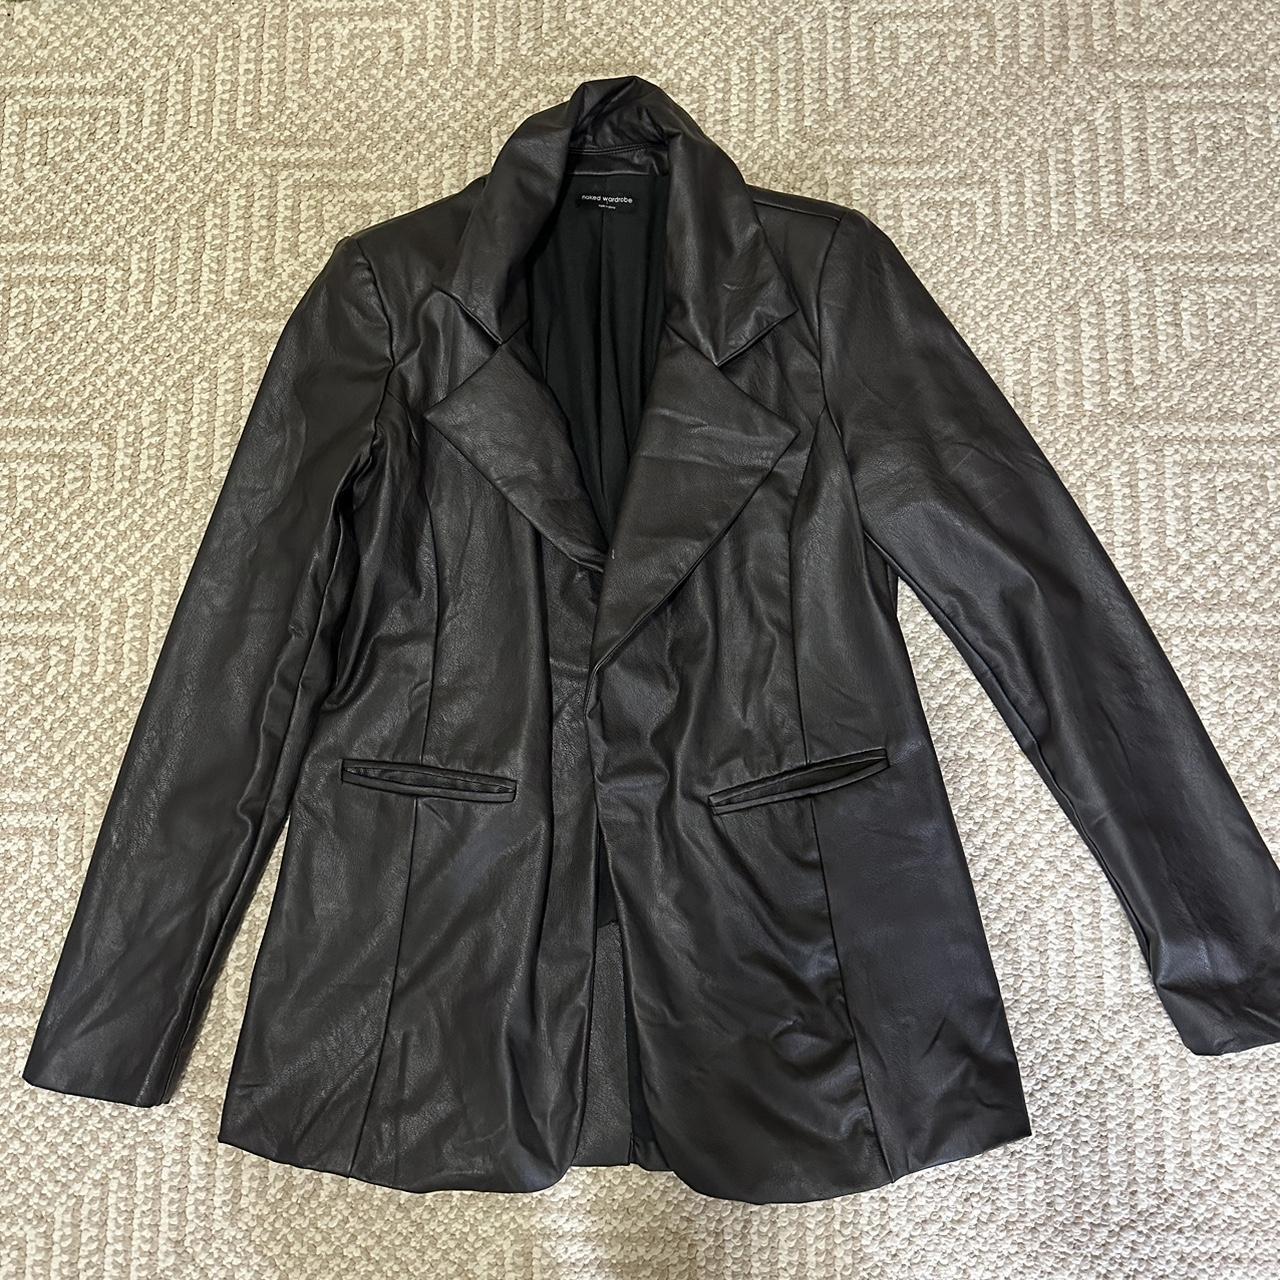 Leather jacket - Depop